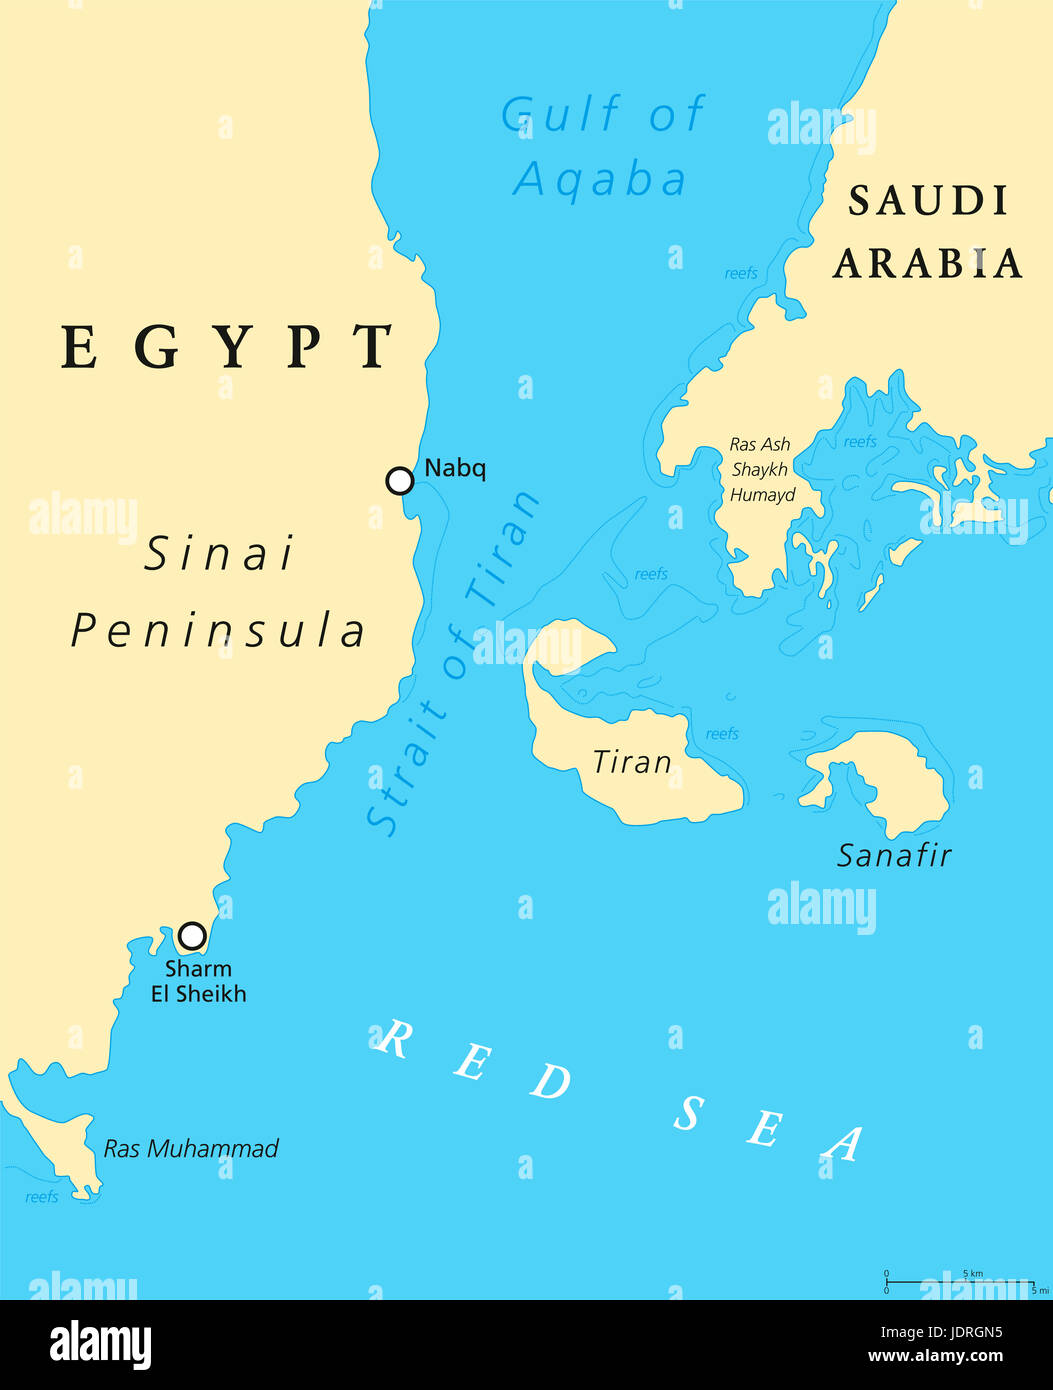 Politische Karte der Straße von Tiran. Schmalen Durchgang zwischen Sinai und arabischen Halbinseln, trennt den Golf von Aqaba vom Roten Meer. Stockfoto